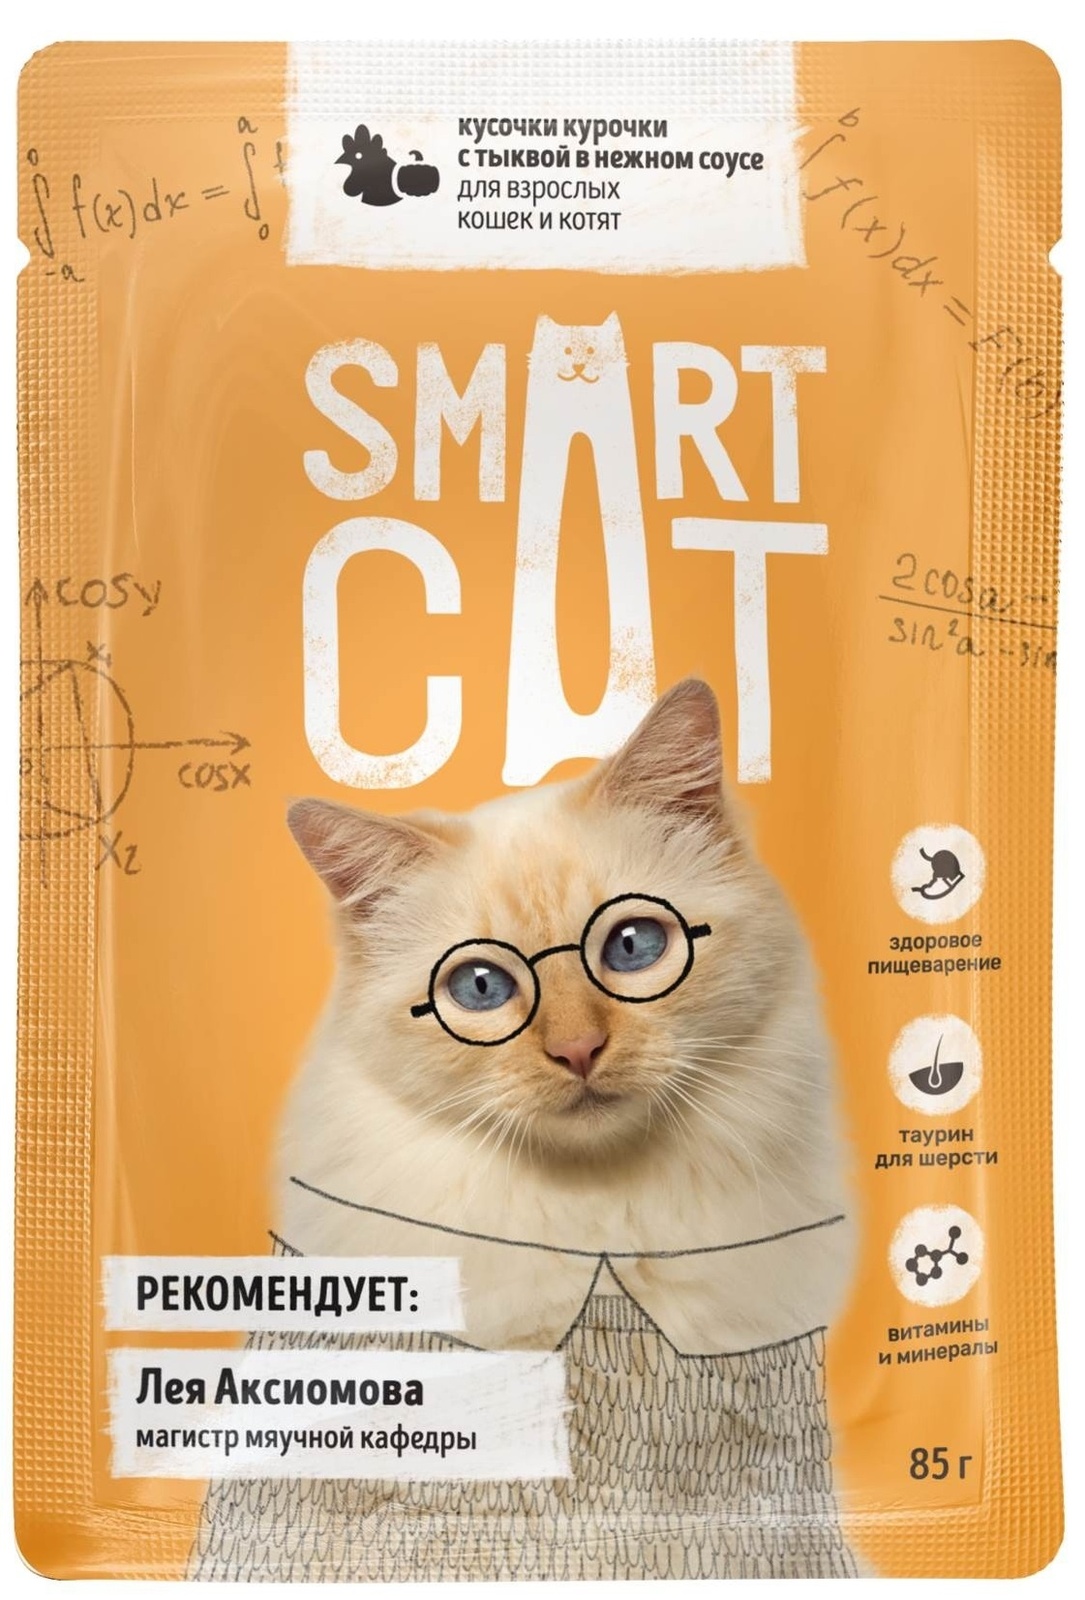 цена Smart Cat Smart Cat паучи для взрослых кошек и котят: кусочки курочки с тыквой в нежном соусе (85 г)